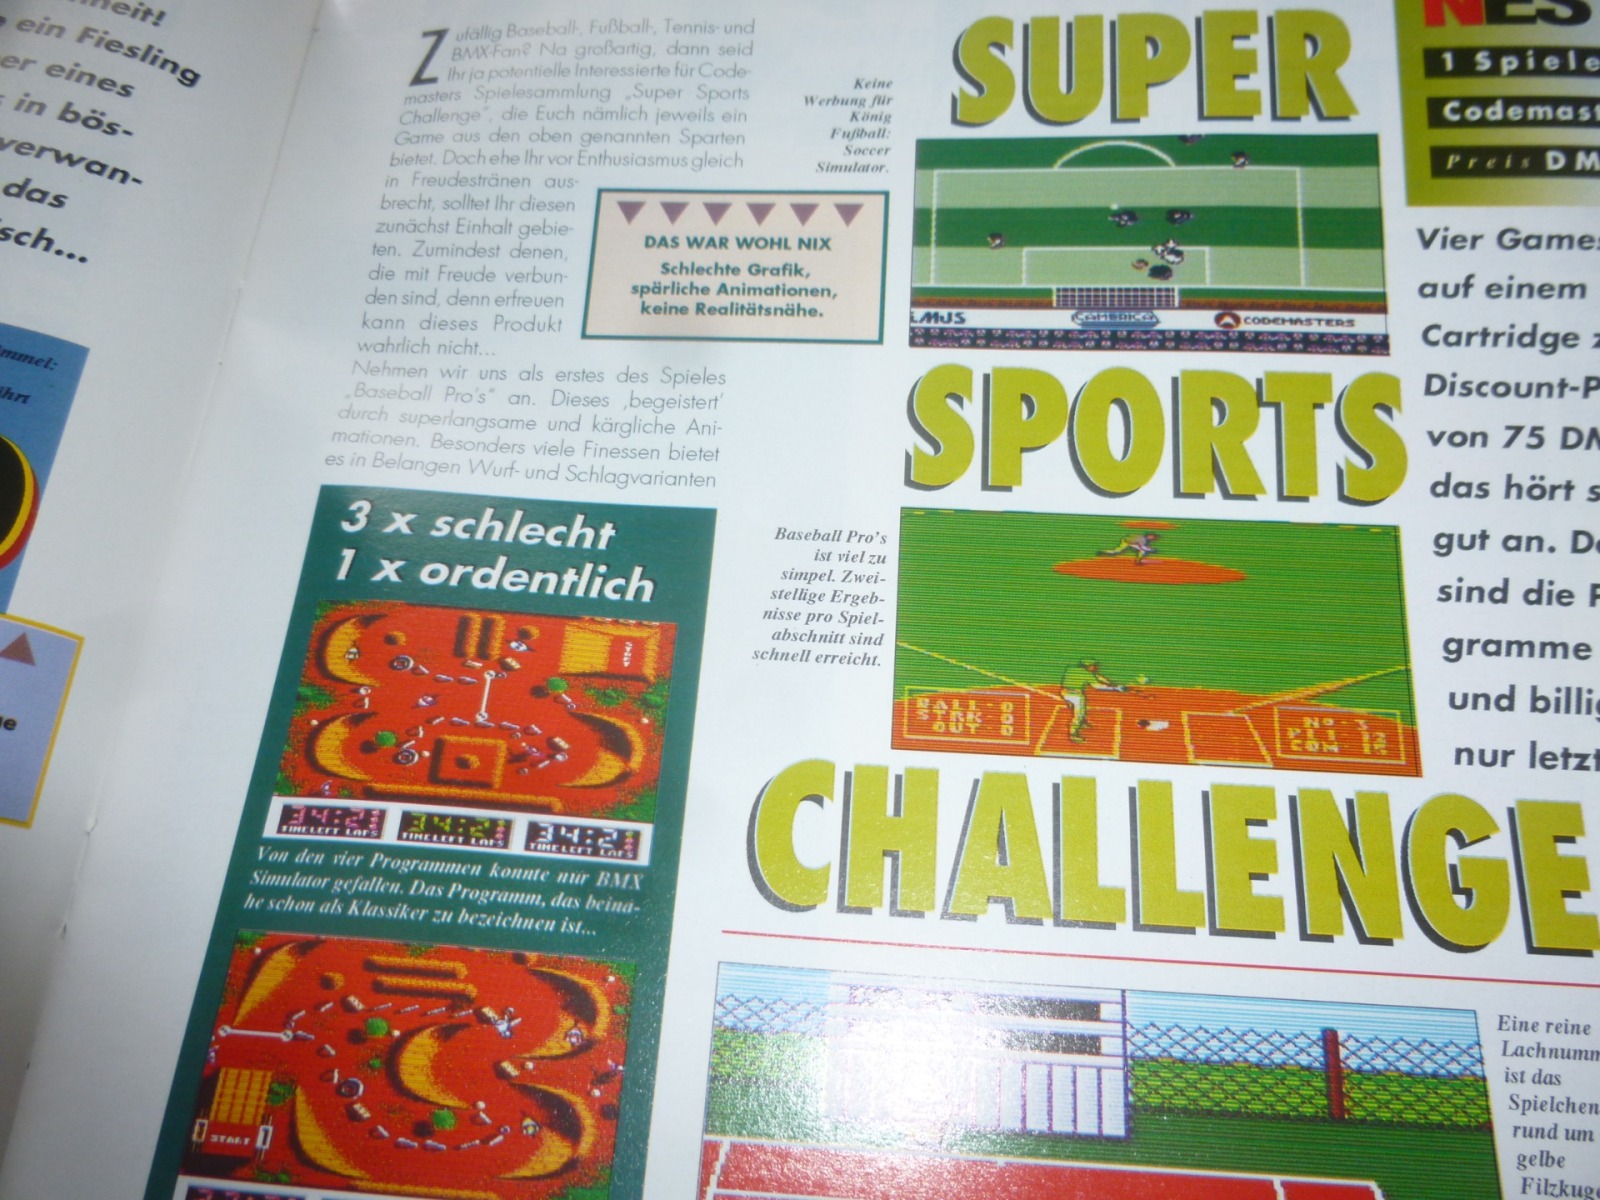 TOTAL Das unabhängige Magazin - 100 Nintendo - Ausgabe 7/93 1993 19